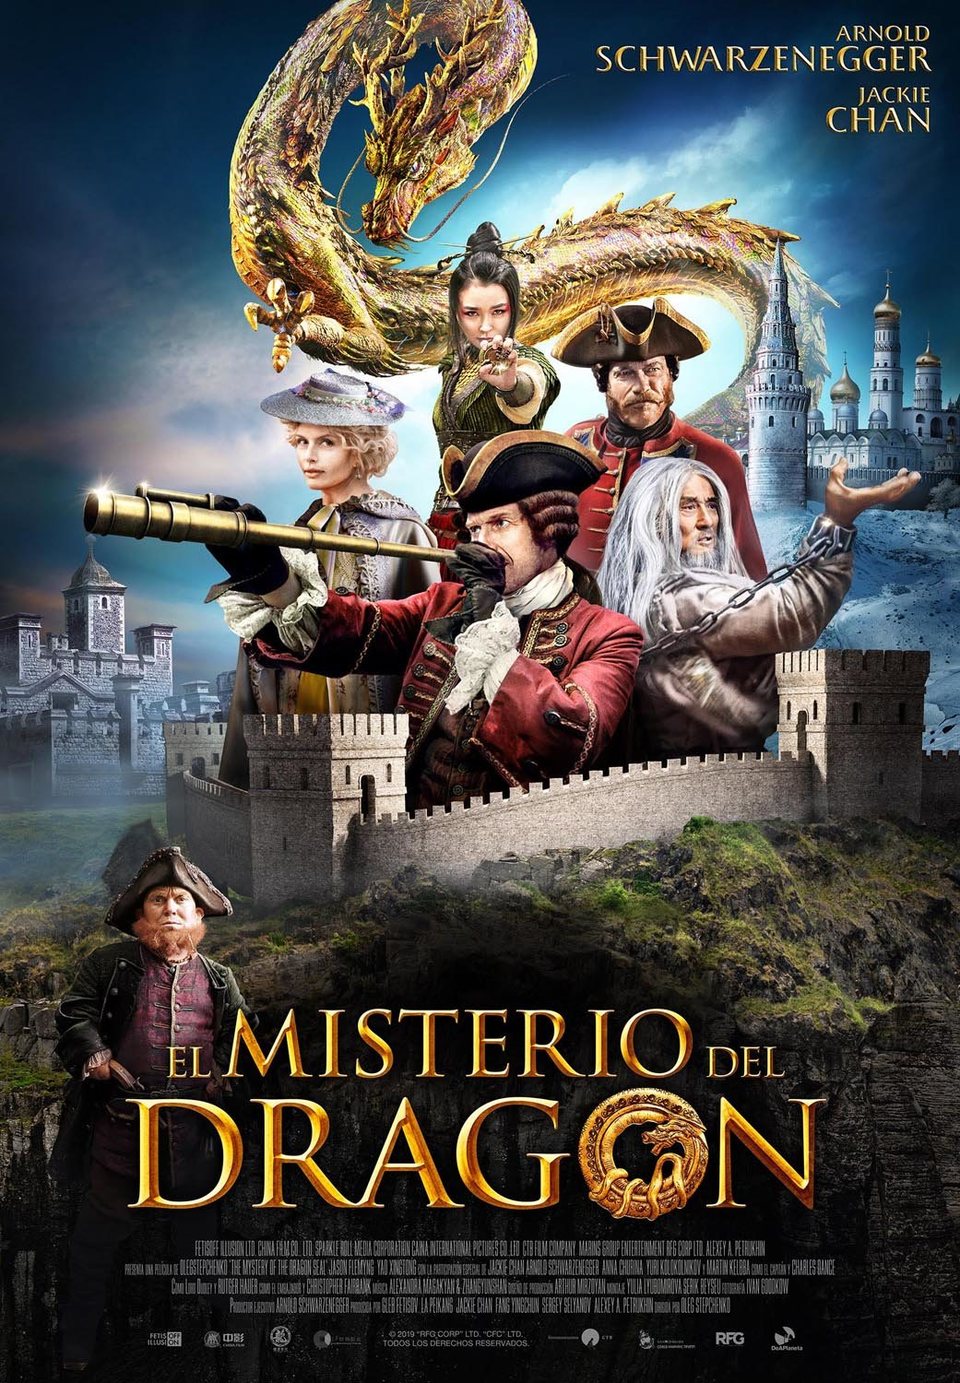 Cartel de The Mystery of the Dragon Seal - Póster español El misterio del dragón